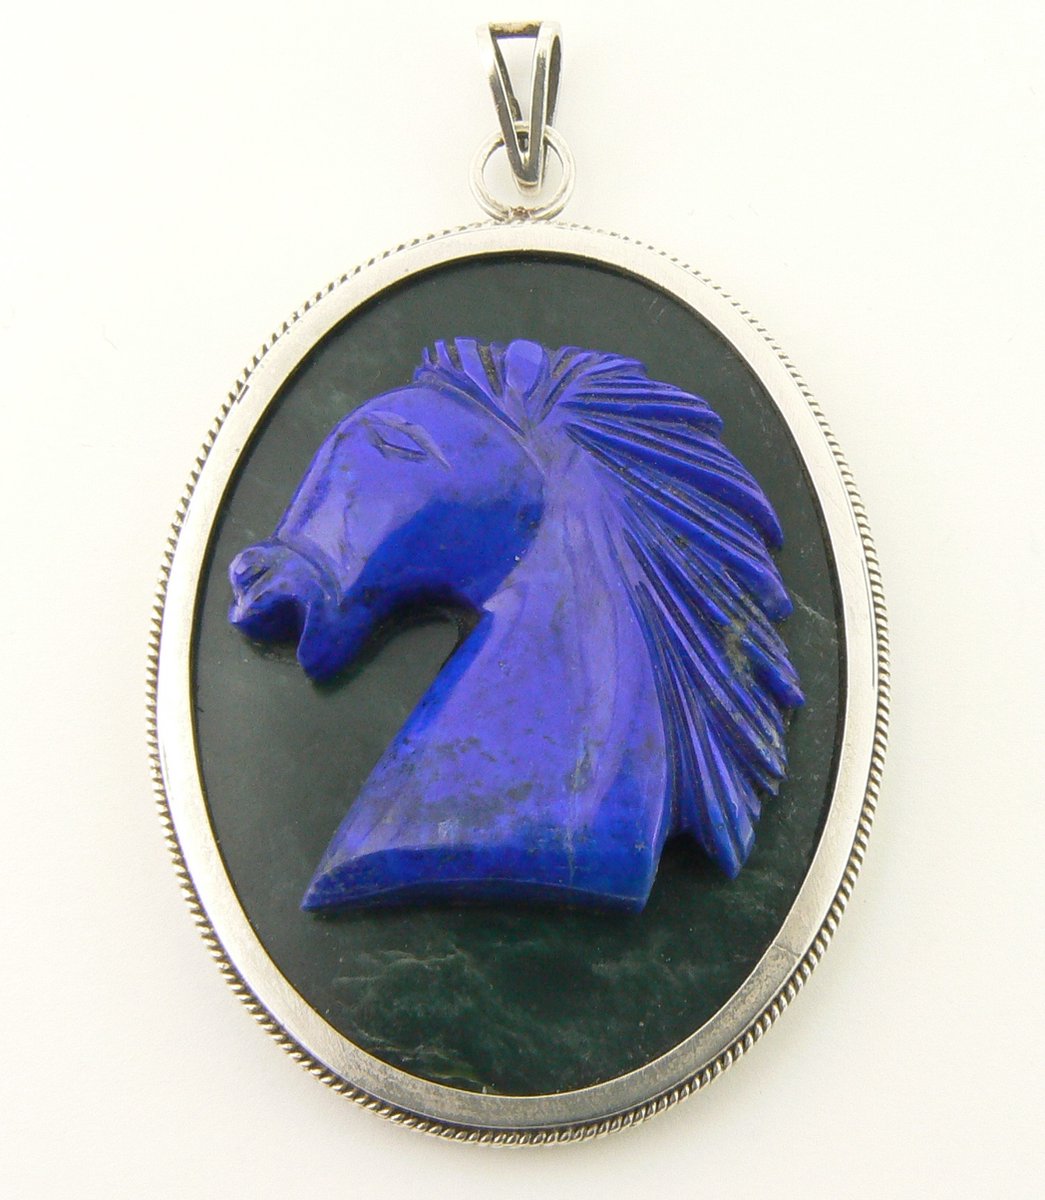 Zilveren hanger met paardenhoofd van lapis lazuli op agaat